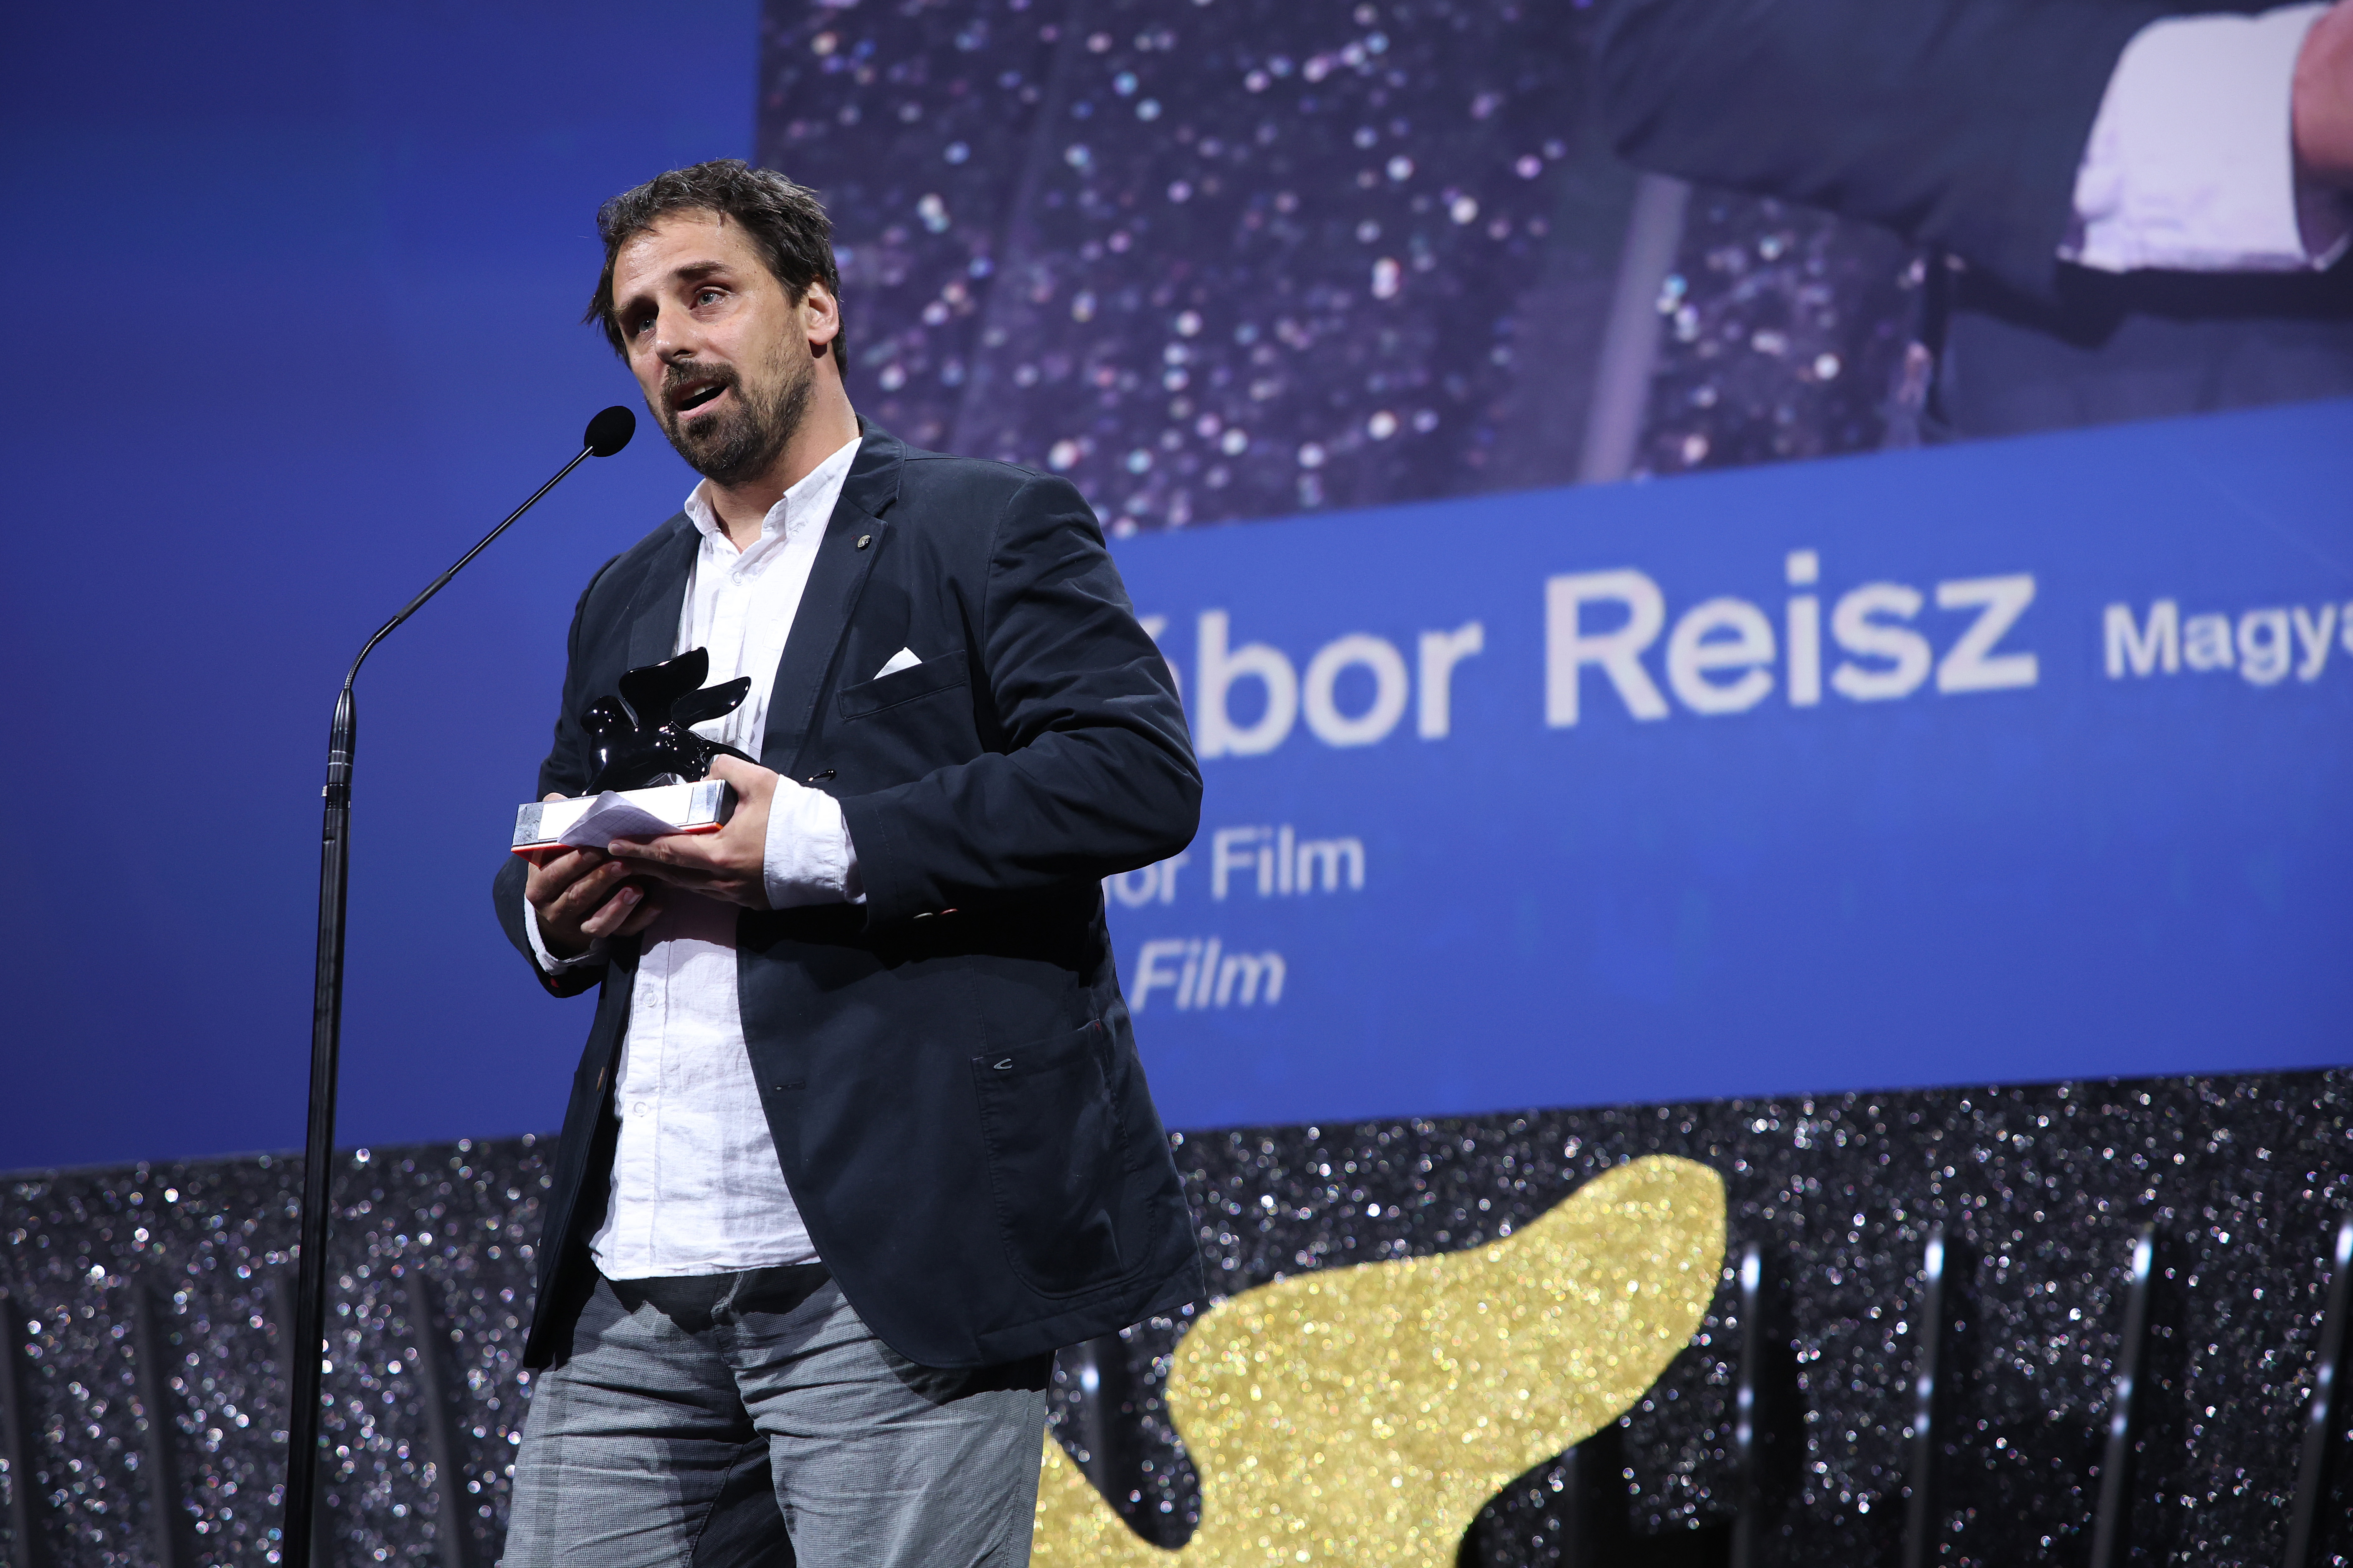 Rangos díjat nyert a Velencei Filmfesztiválon Reisz Gábor új filmje